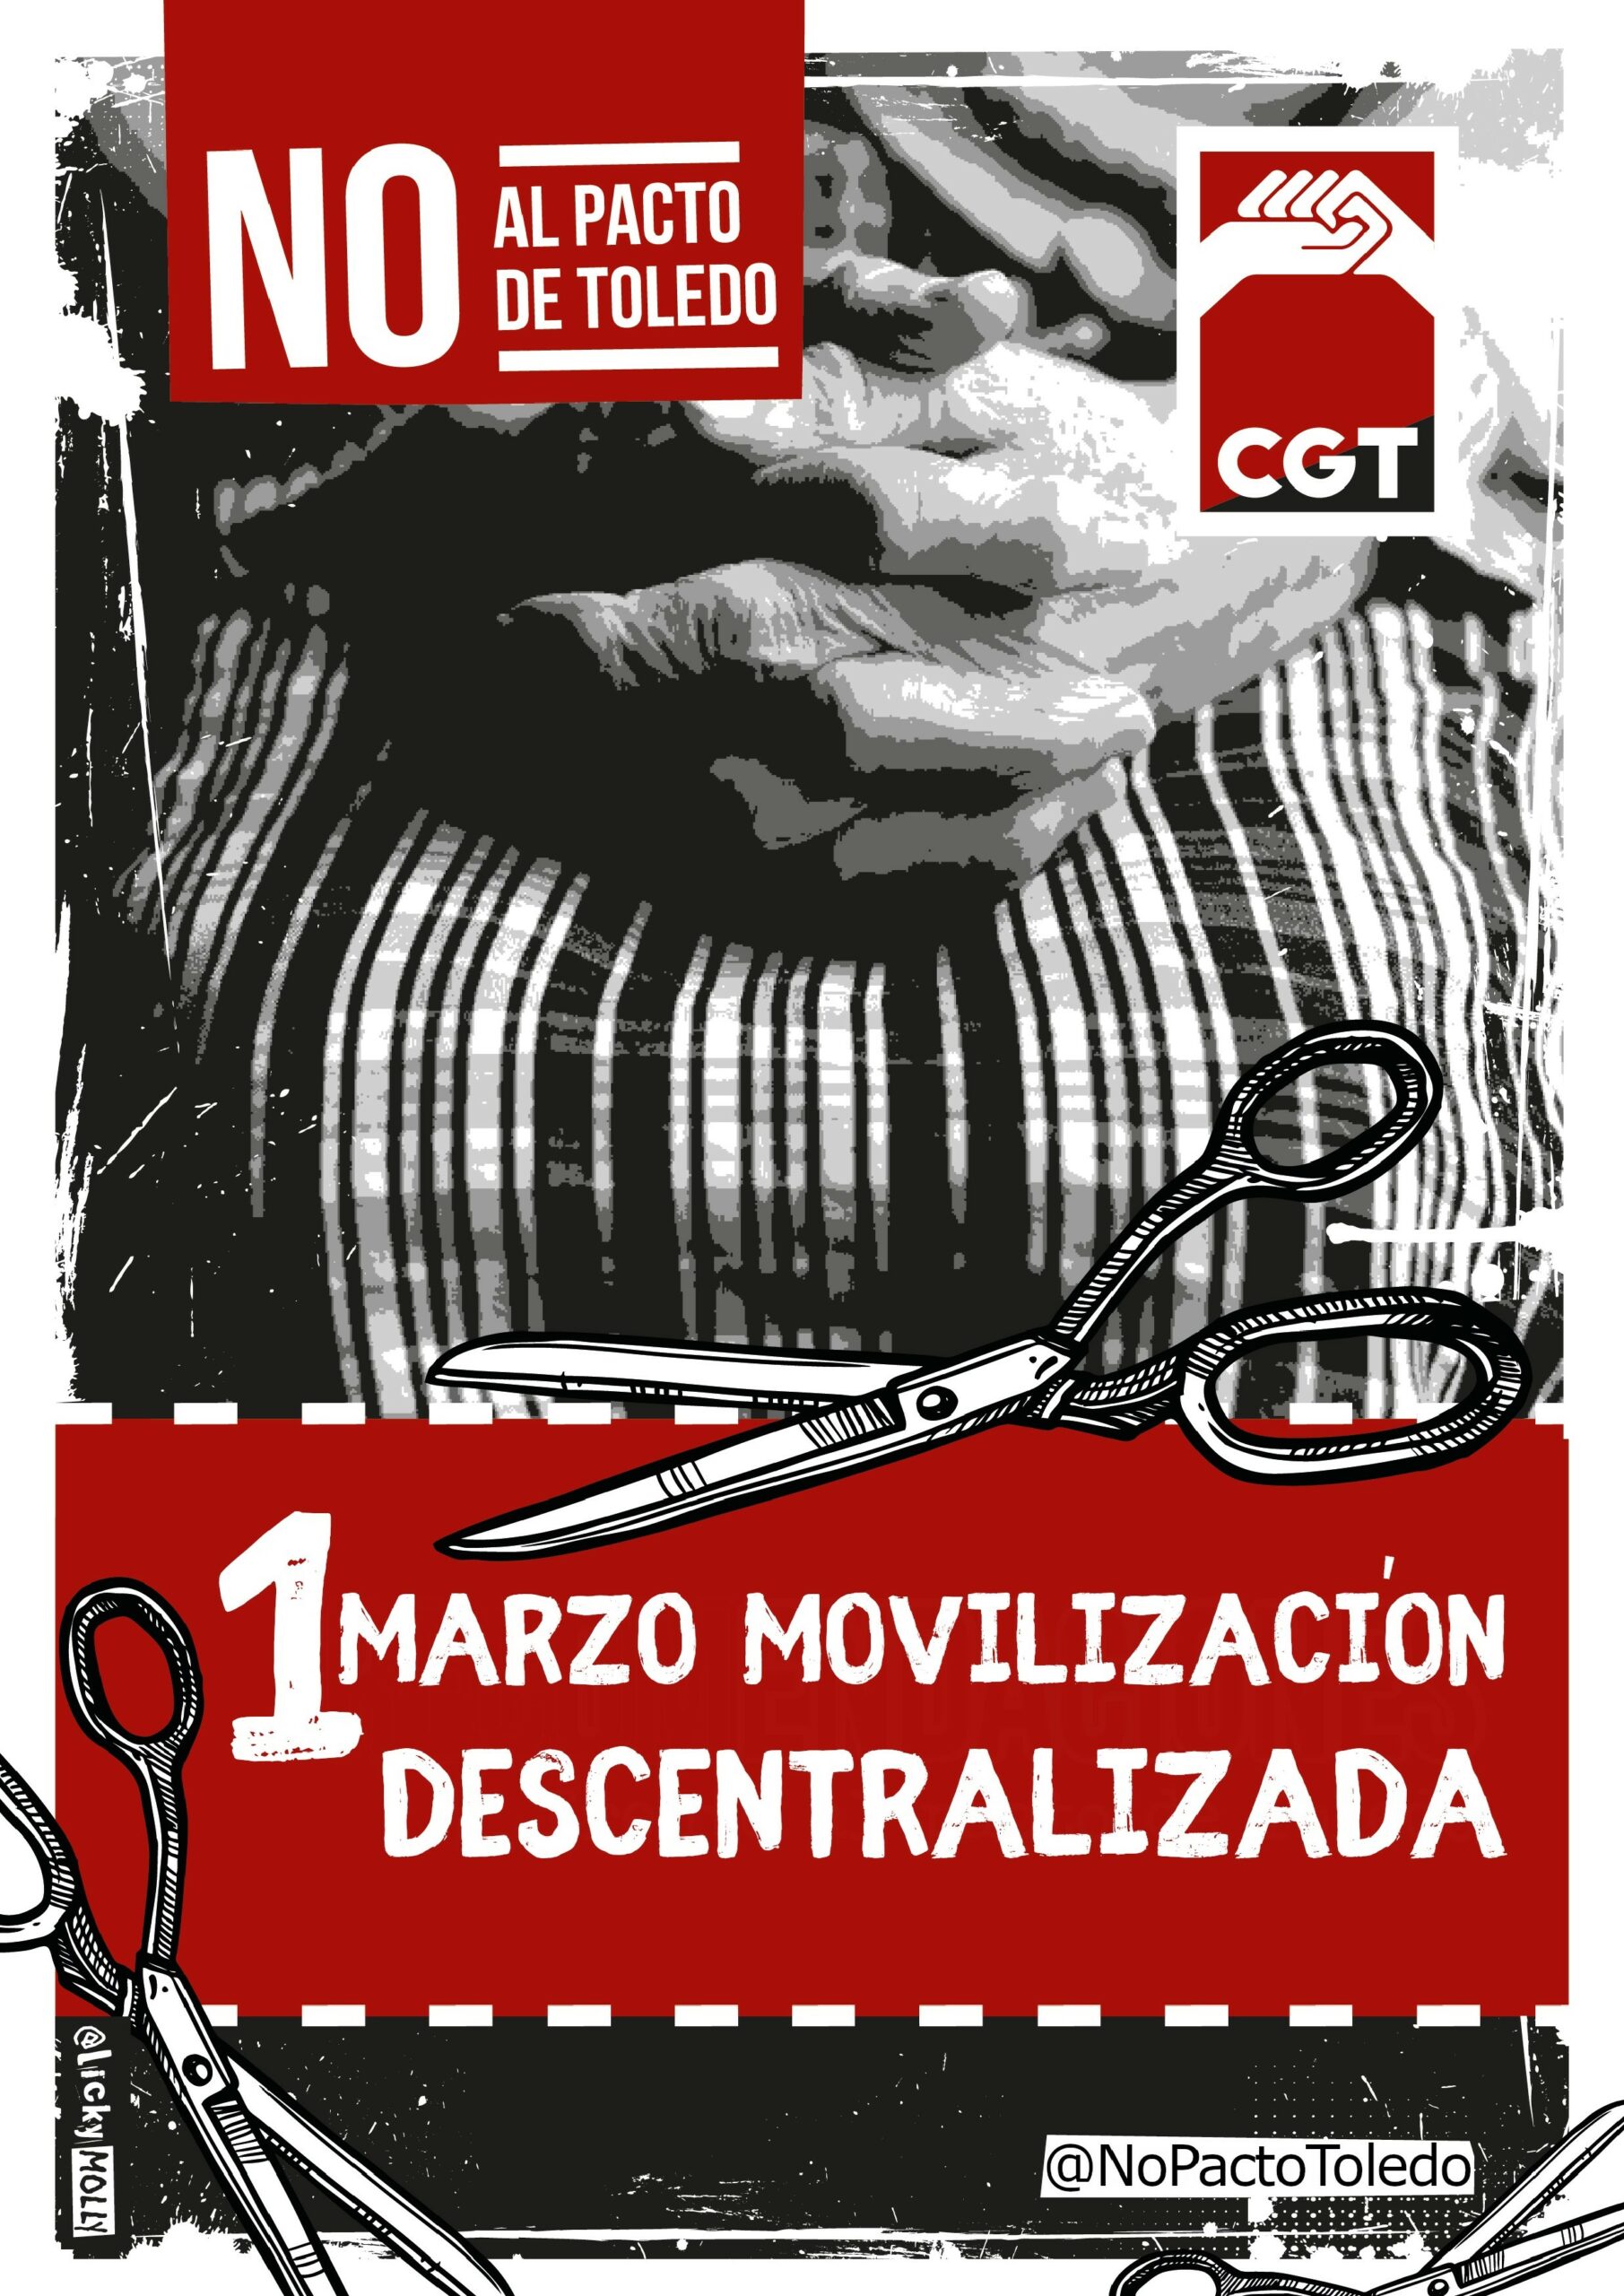 1 DE MARZO MOVILIZACIÓN DESCENTRALIZADA NO AL PACTO DE TOLEDO